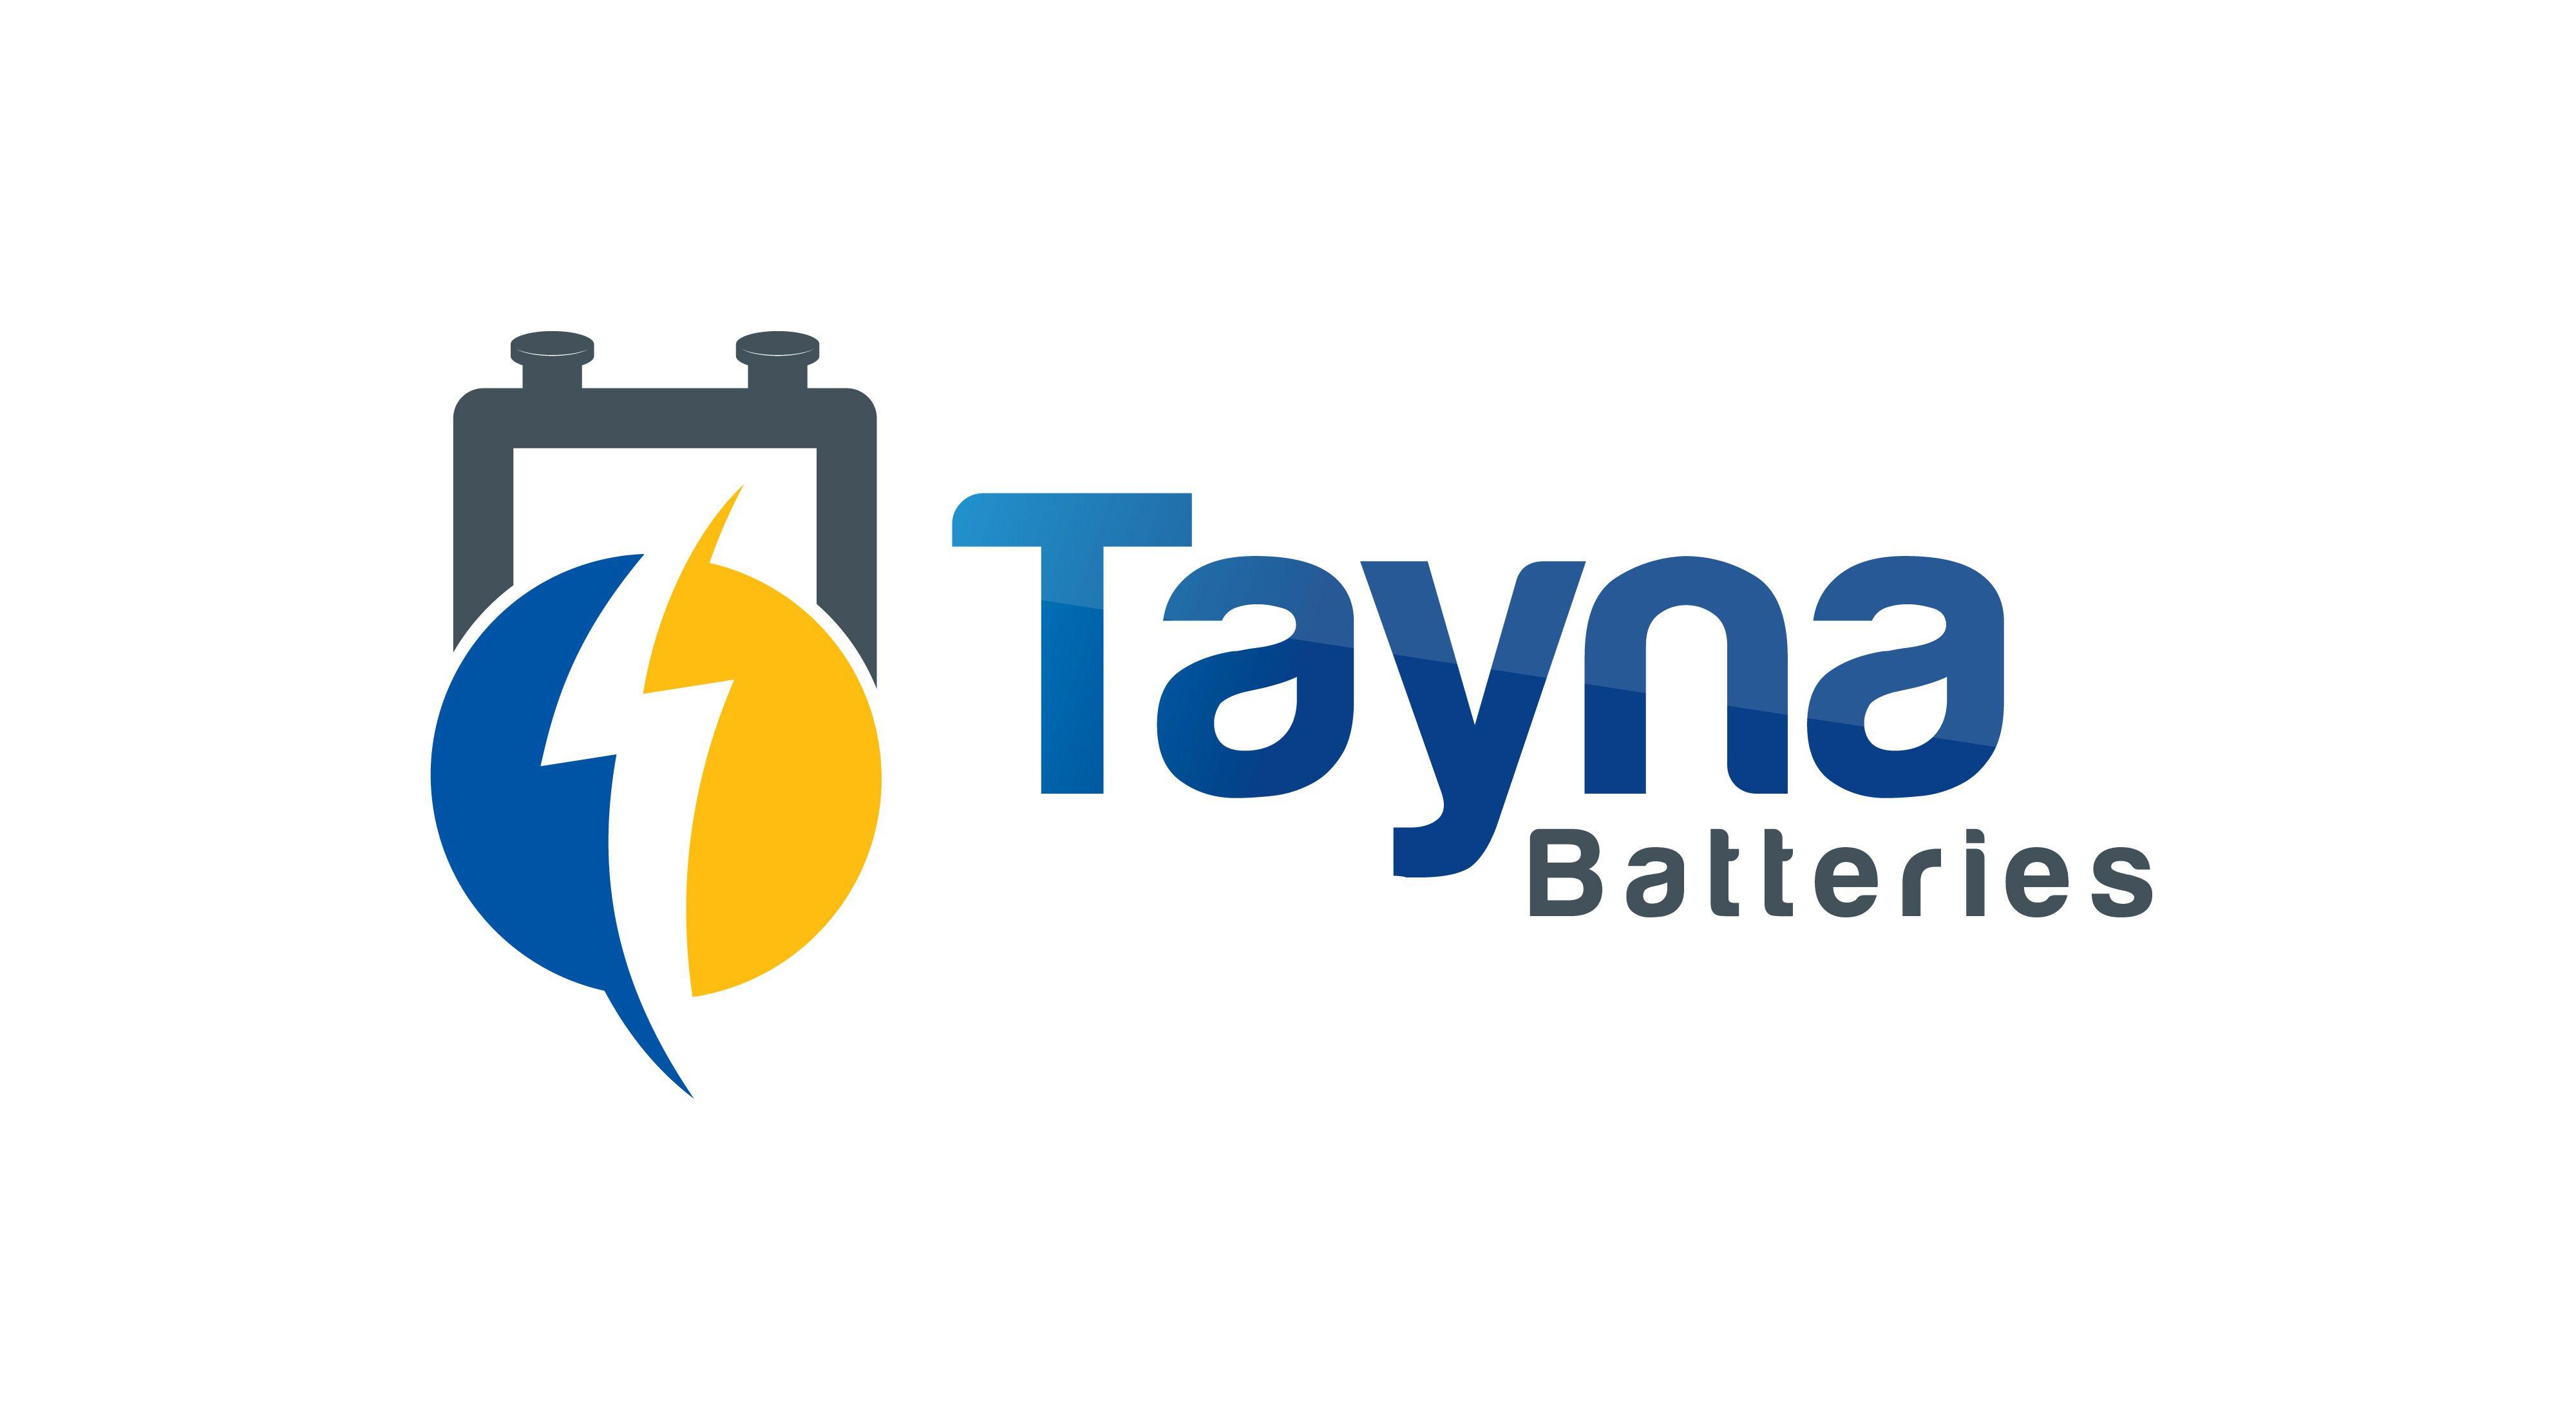 Battery Company Logo - Battery Logos